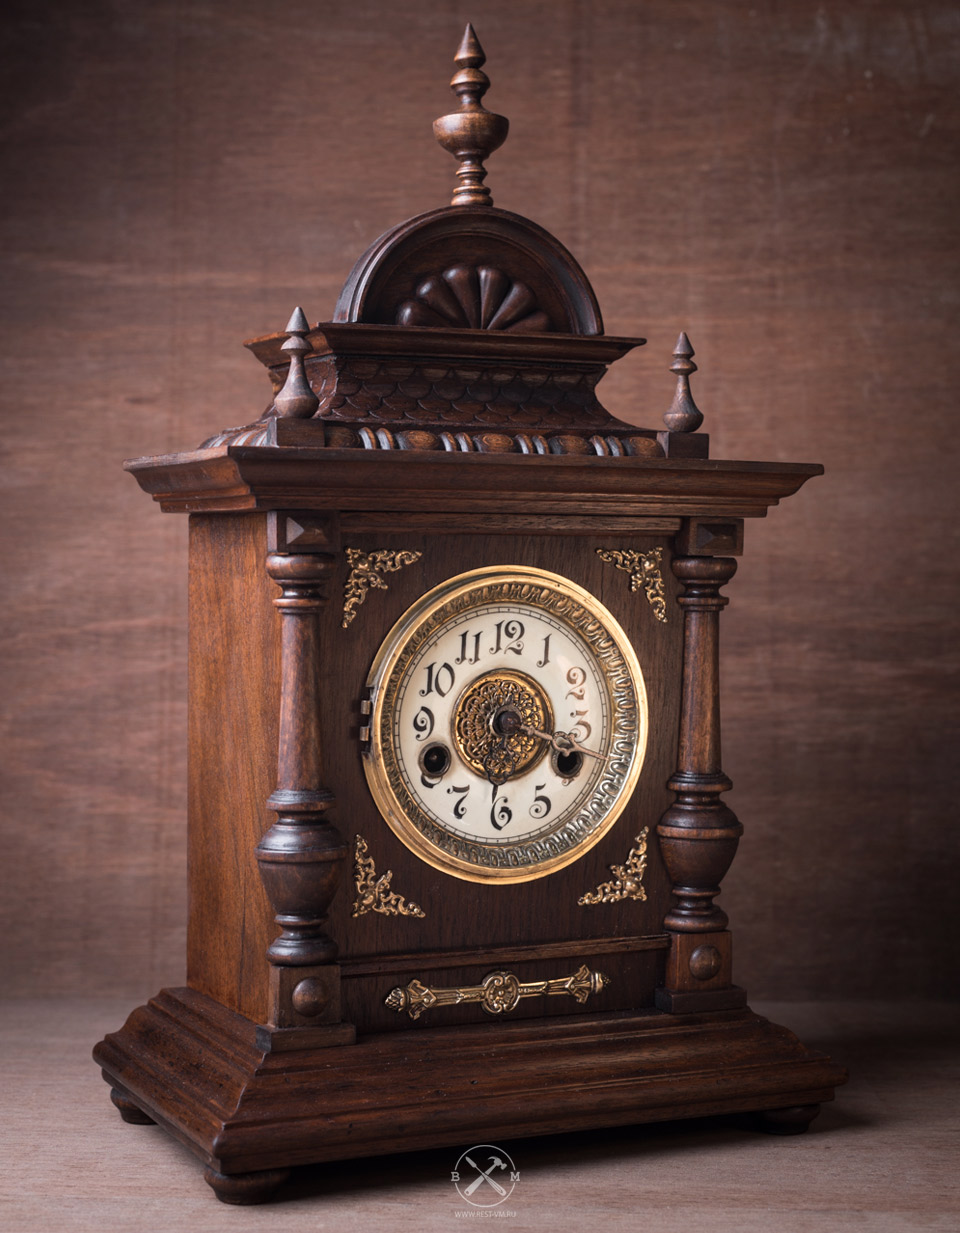 Реставрация часов в Москве: цены на ремонт антикварных настенных часов | СТЭЛЬ